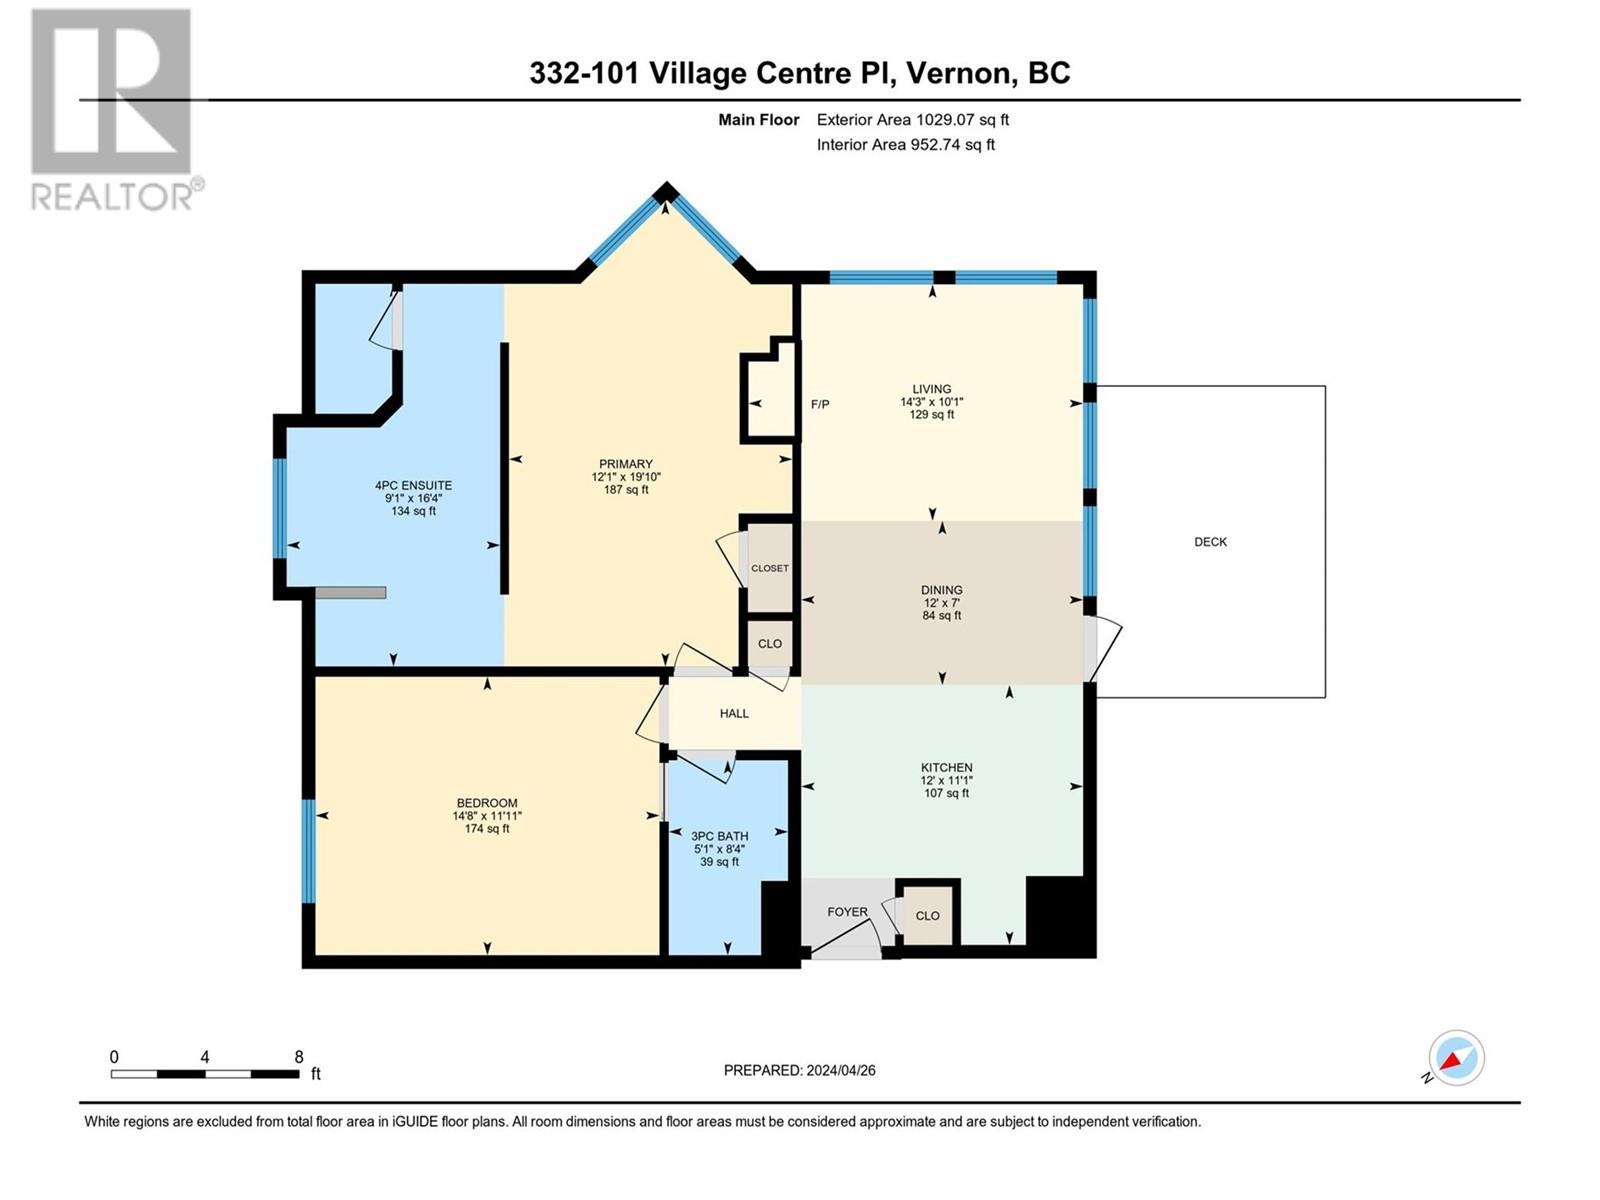 101 Village Centre Court Unit# 332 Vernon